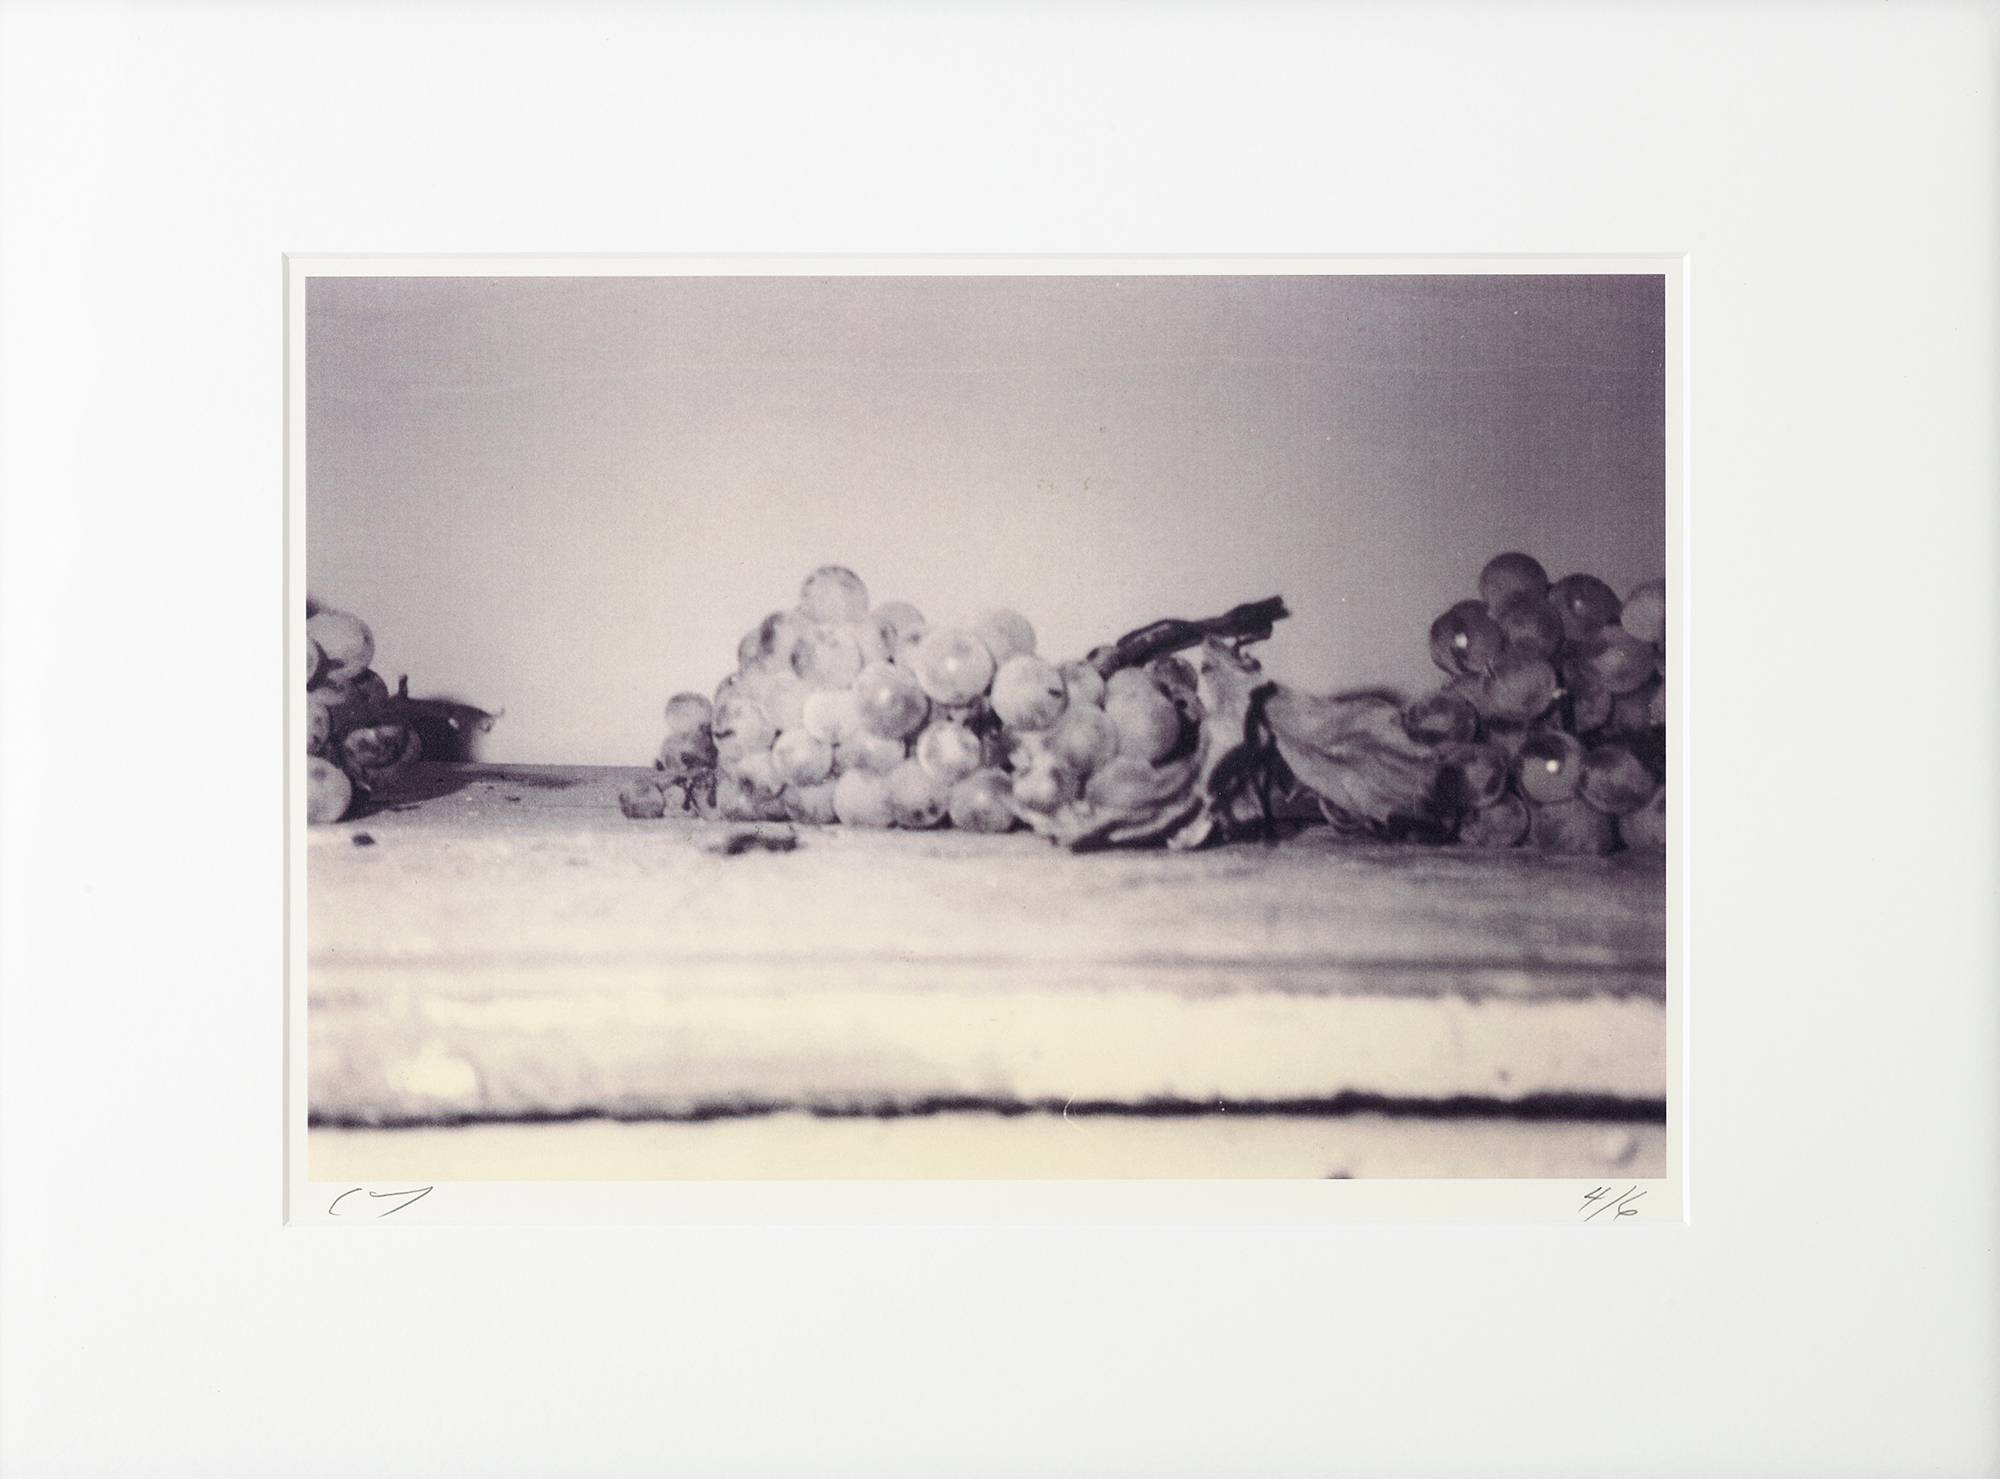 Cy Twombly, 1997, “Grapes” (Gaeta). © Fondazione Nicola Del Roscio. Courtesy archives Fondazione Nicola Del Roscio.